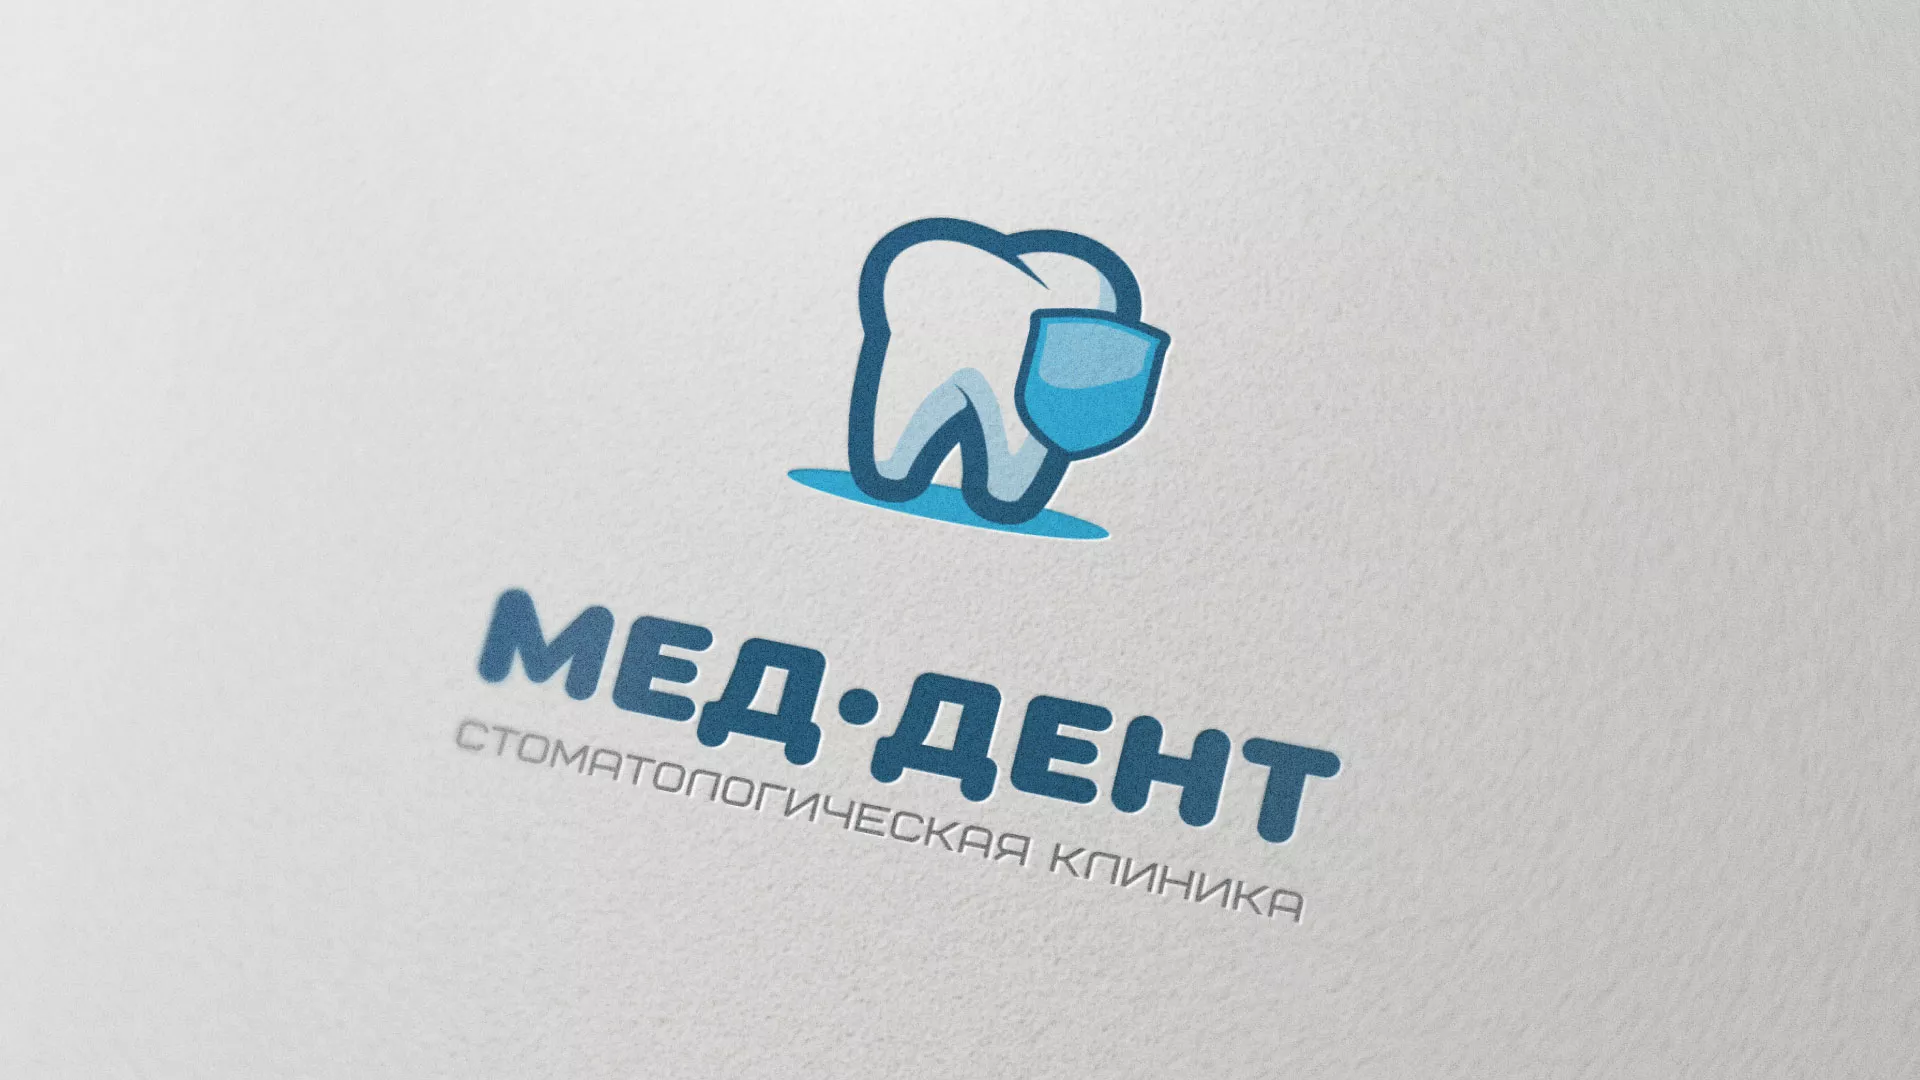 Разработка логотипа стоматологической клиники «МЕД-ДЕНТ» в Ликино-Дулево